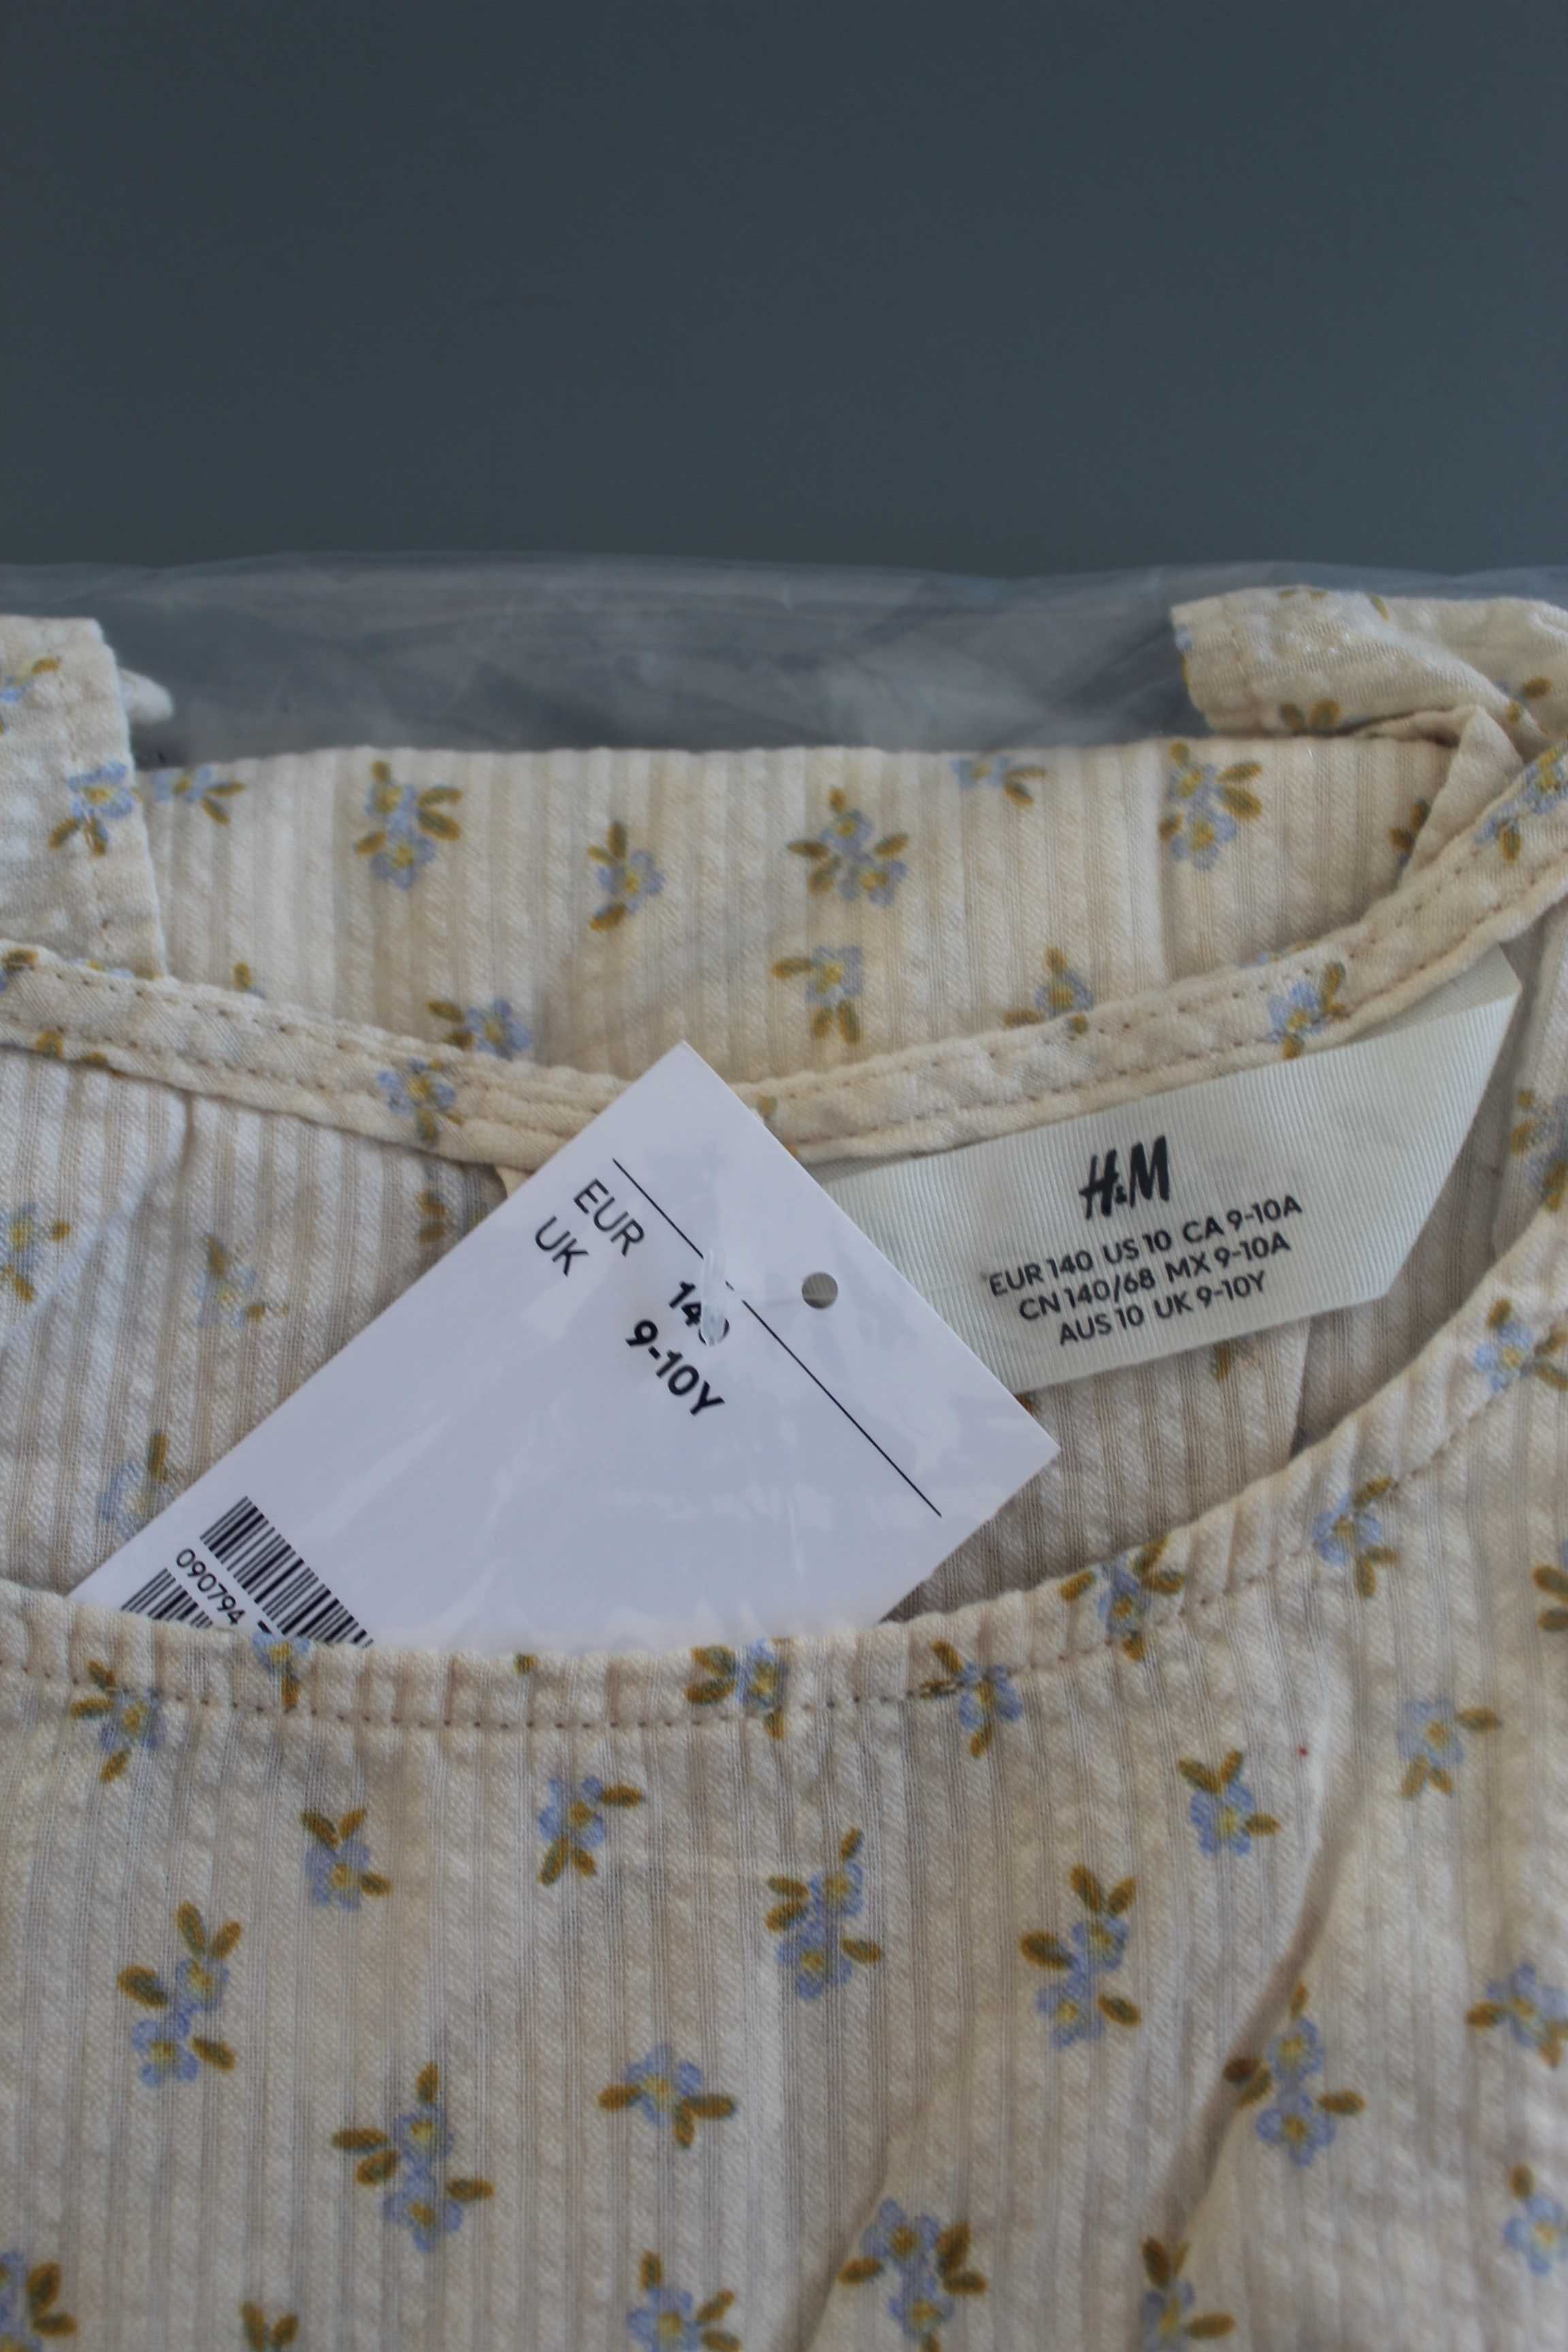 Ніжна легка сукня від H&M, вік: 6-7, 8-9 та 9-10 років